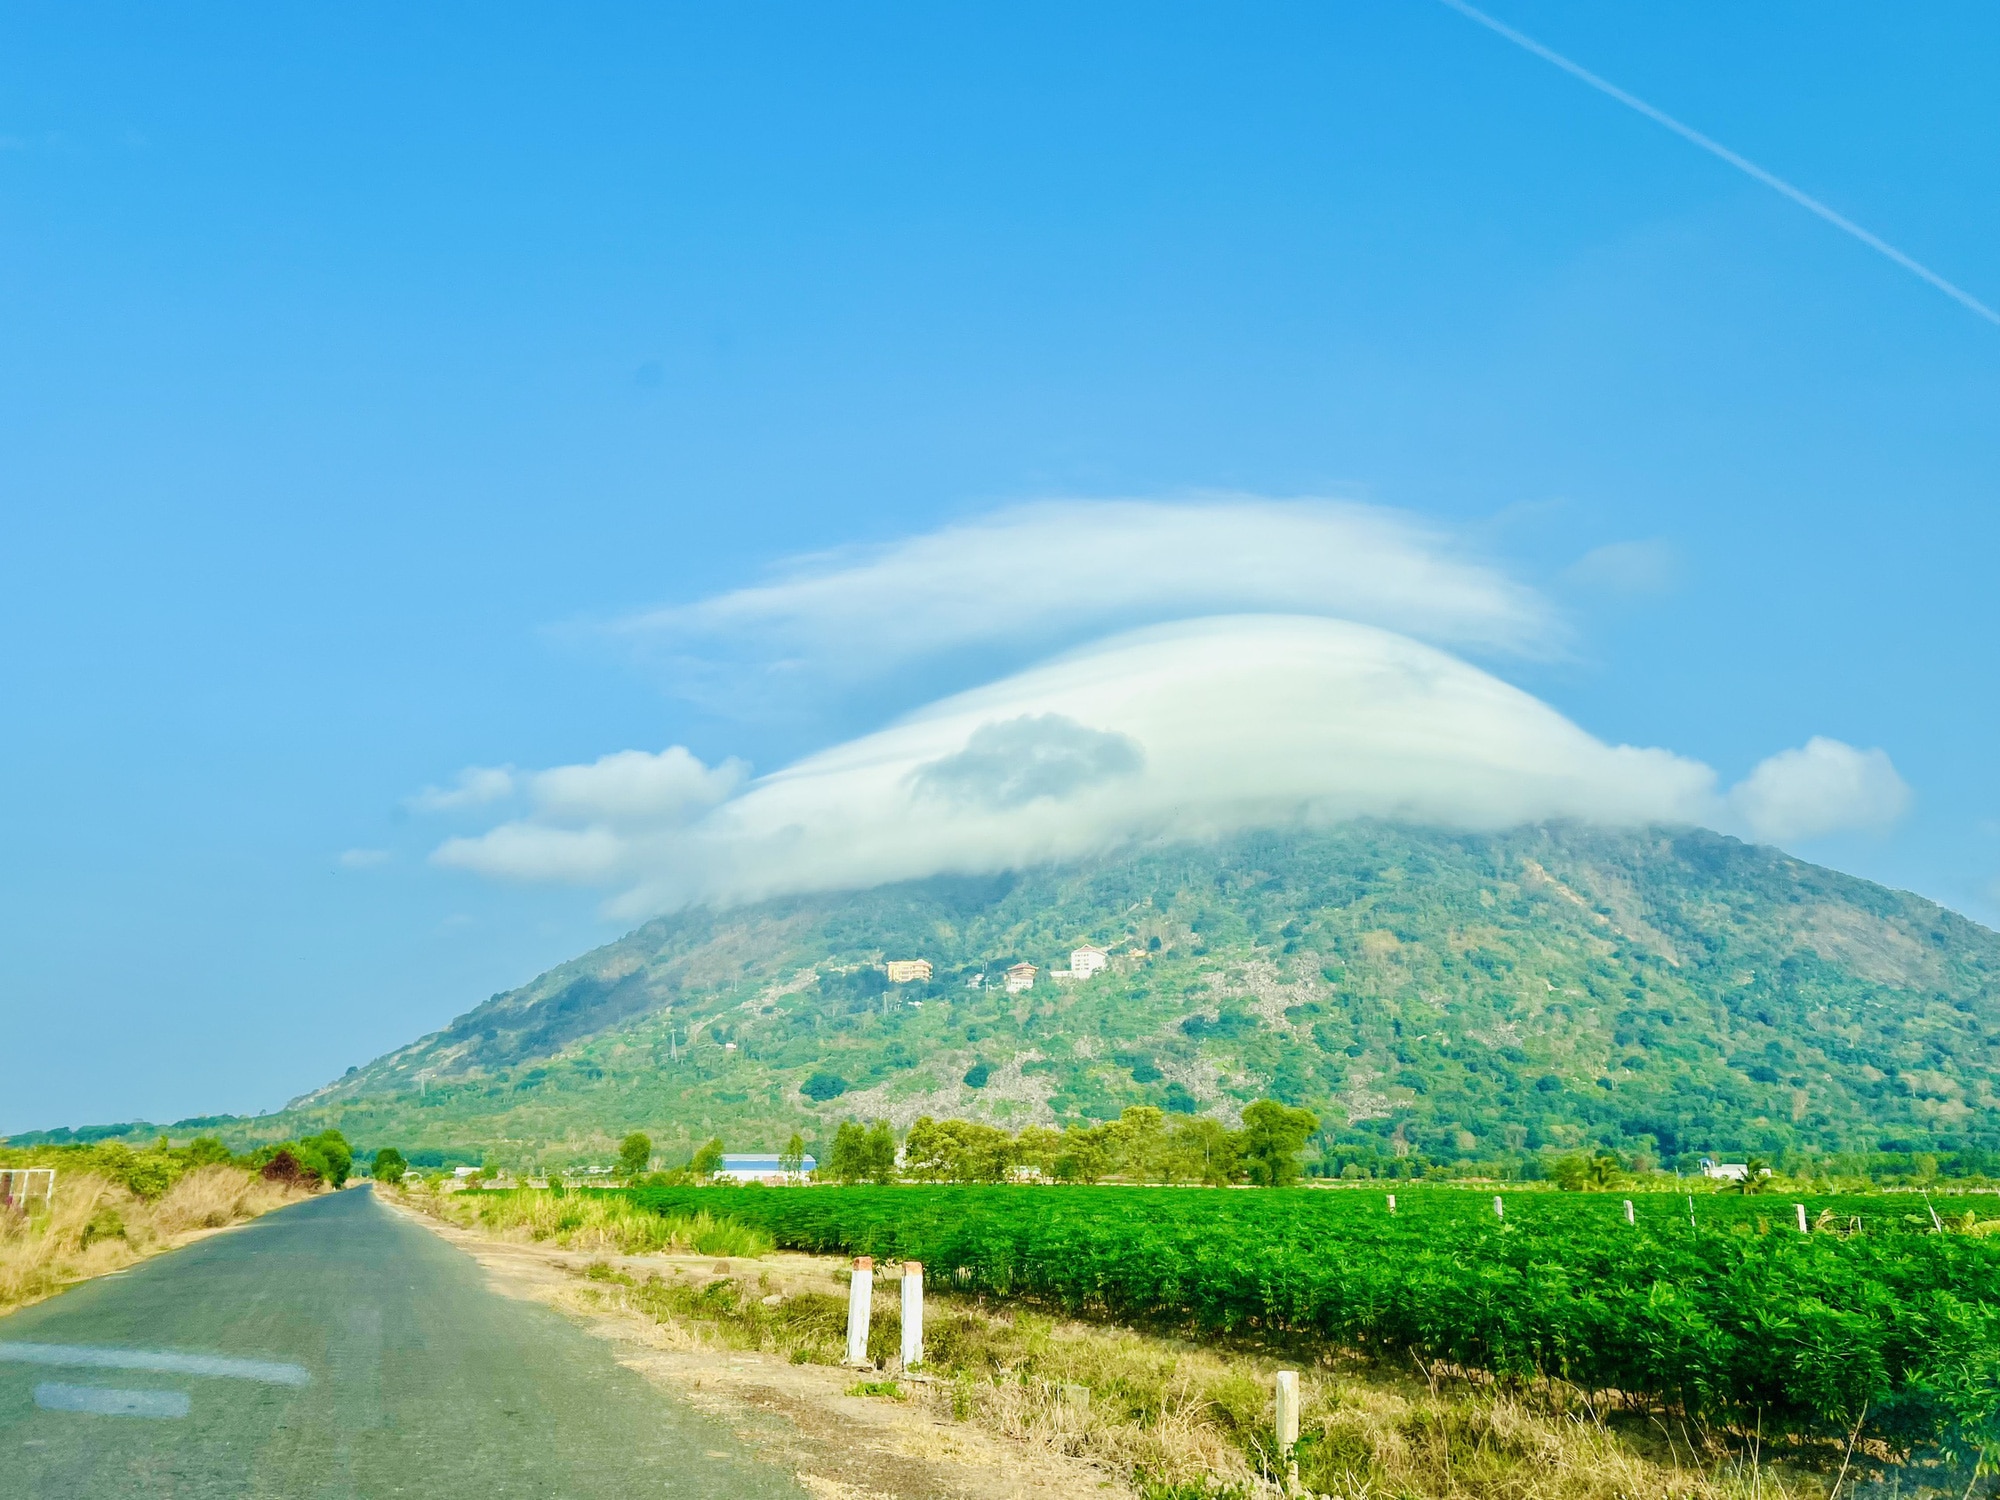 Mũ mây trên núi Bà Đen nhìn từ huyện Dương Minh Châu